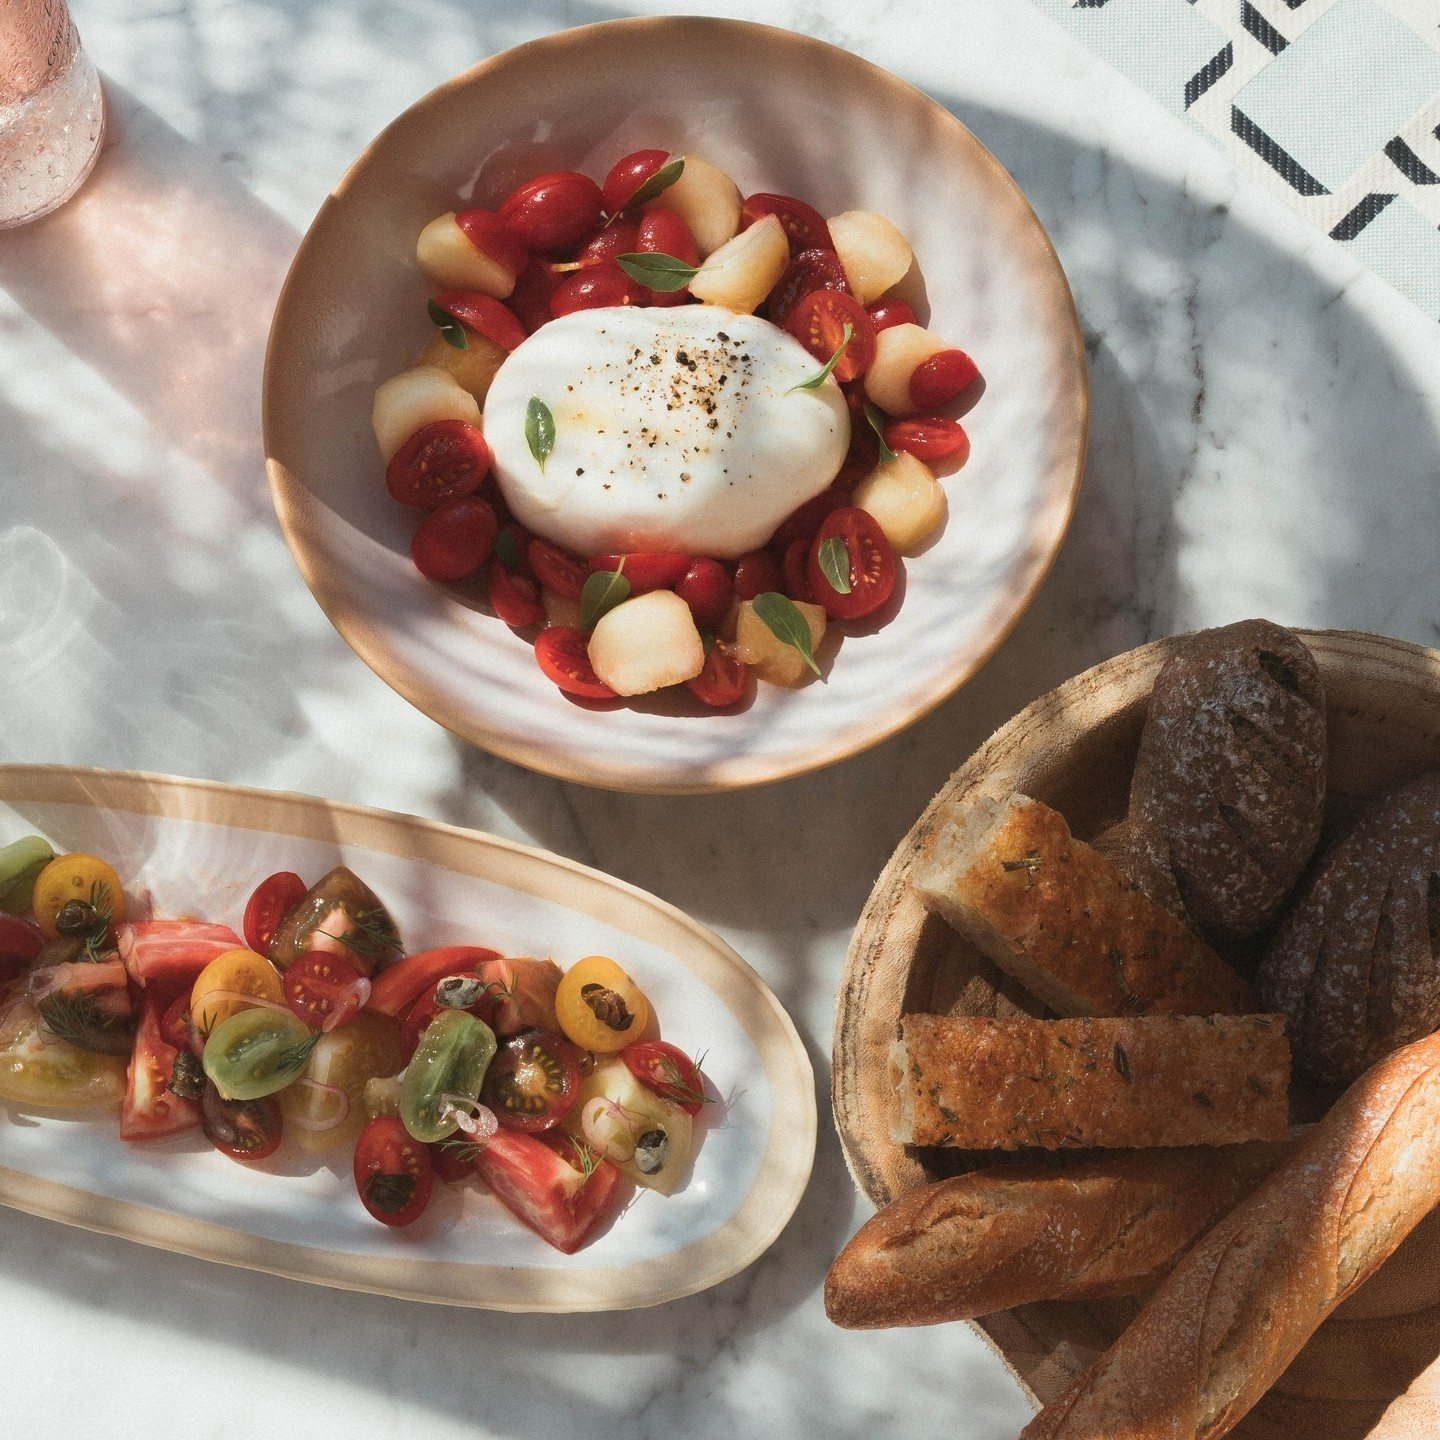 La Cantine Du Faubourg ist ein luxuriöses französisch-griechisches Open-Air-Restaurant, das exquisite Thunfisch-Ceviche, riesige Burrata-Bällchen und köstliche Trüffel-Tagliolini serviert